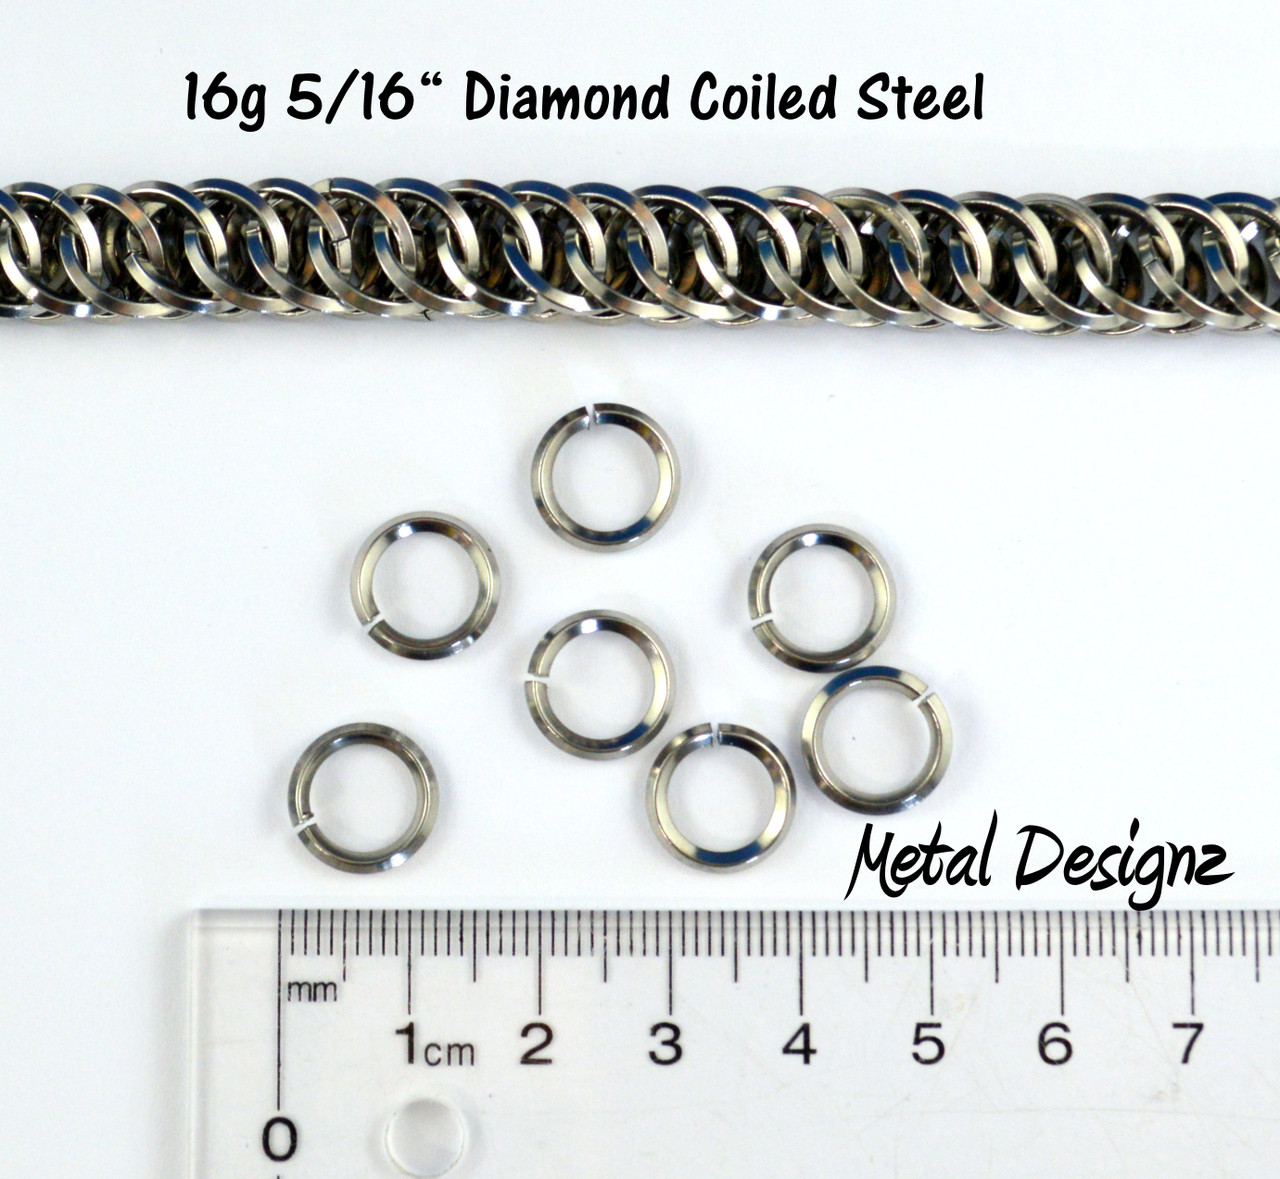 Stainless Steel Jump Rings 10mm - Open 16 Gauge - 100 Rings - J153